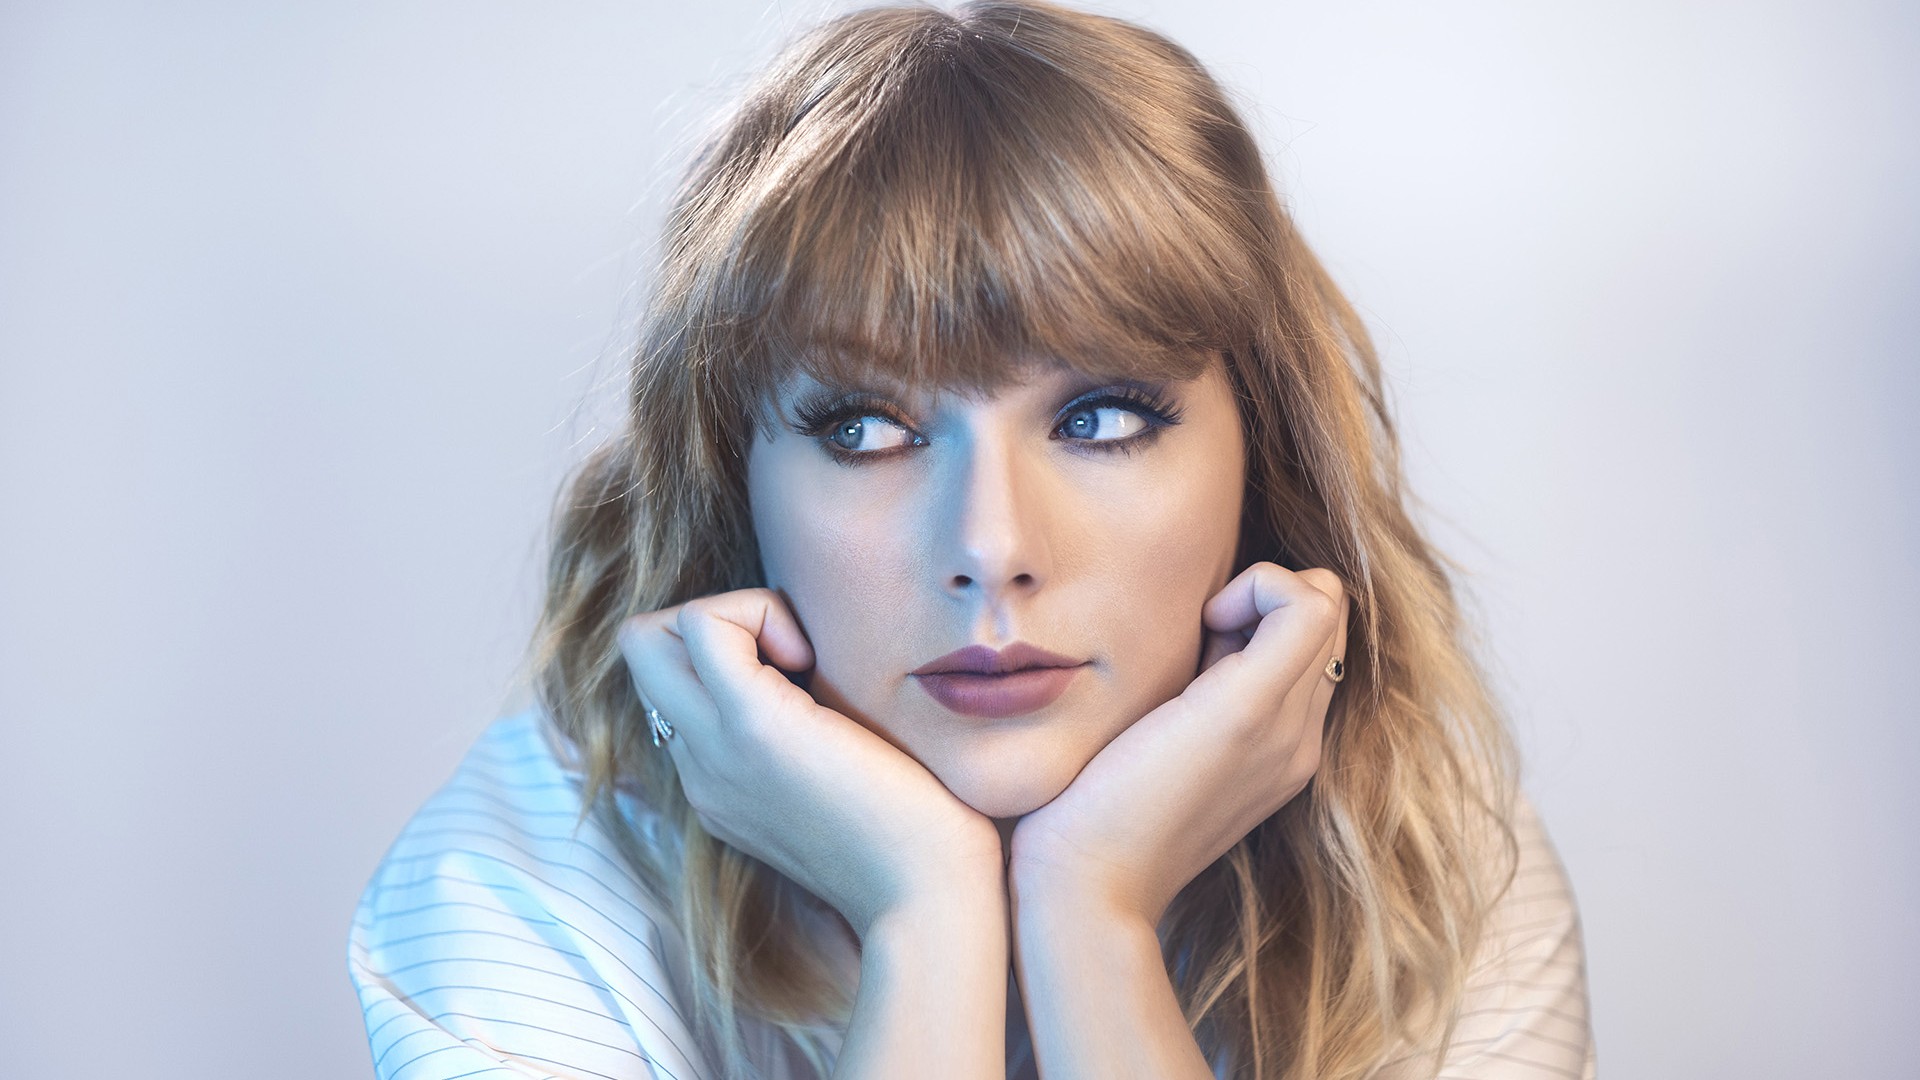 Cute Wallpaper Taylor Swift - HD Wallpaper 